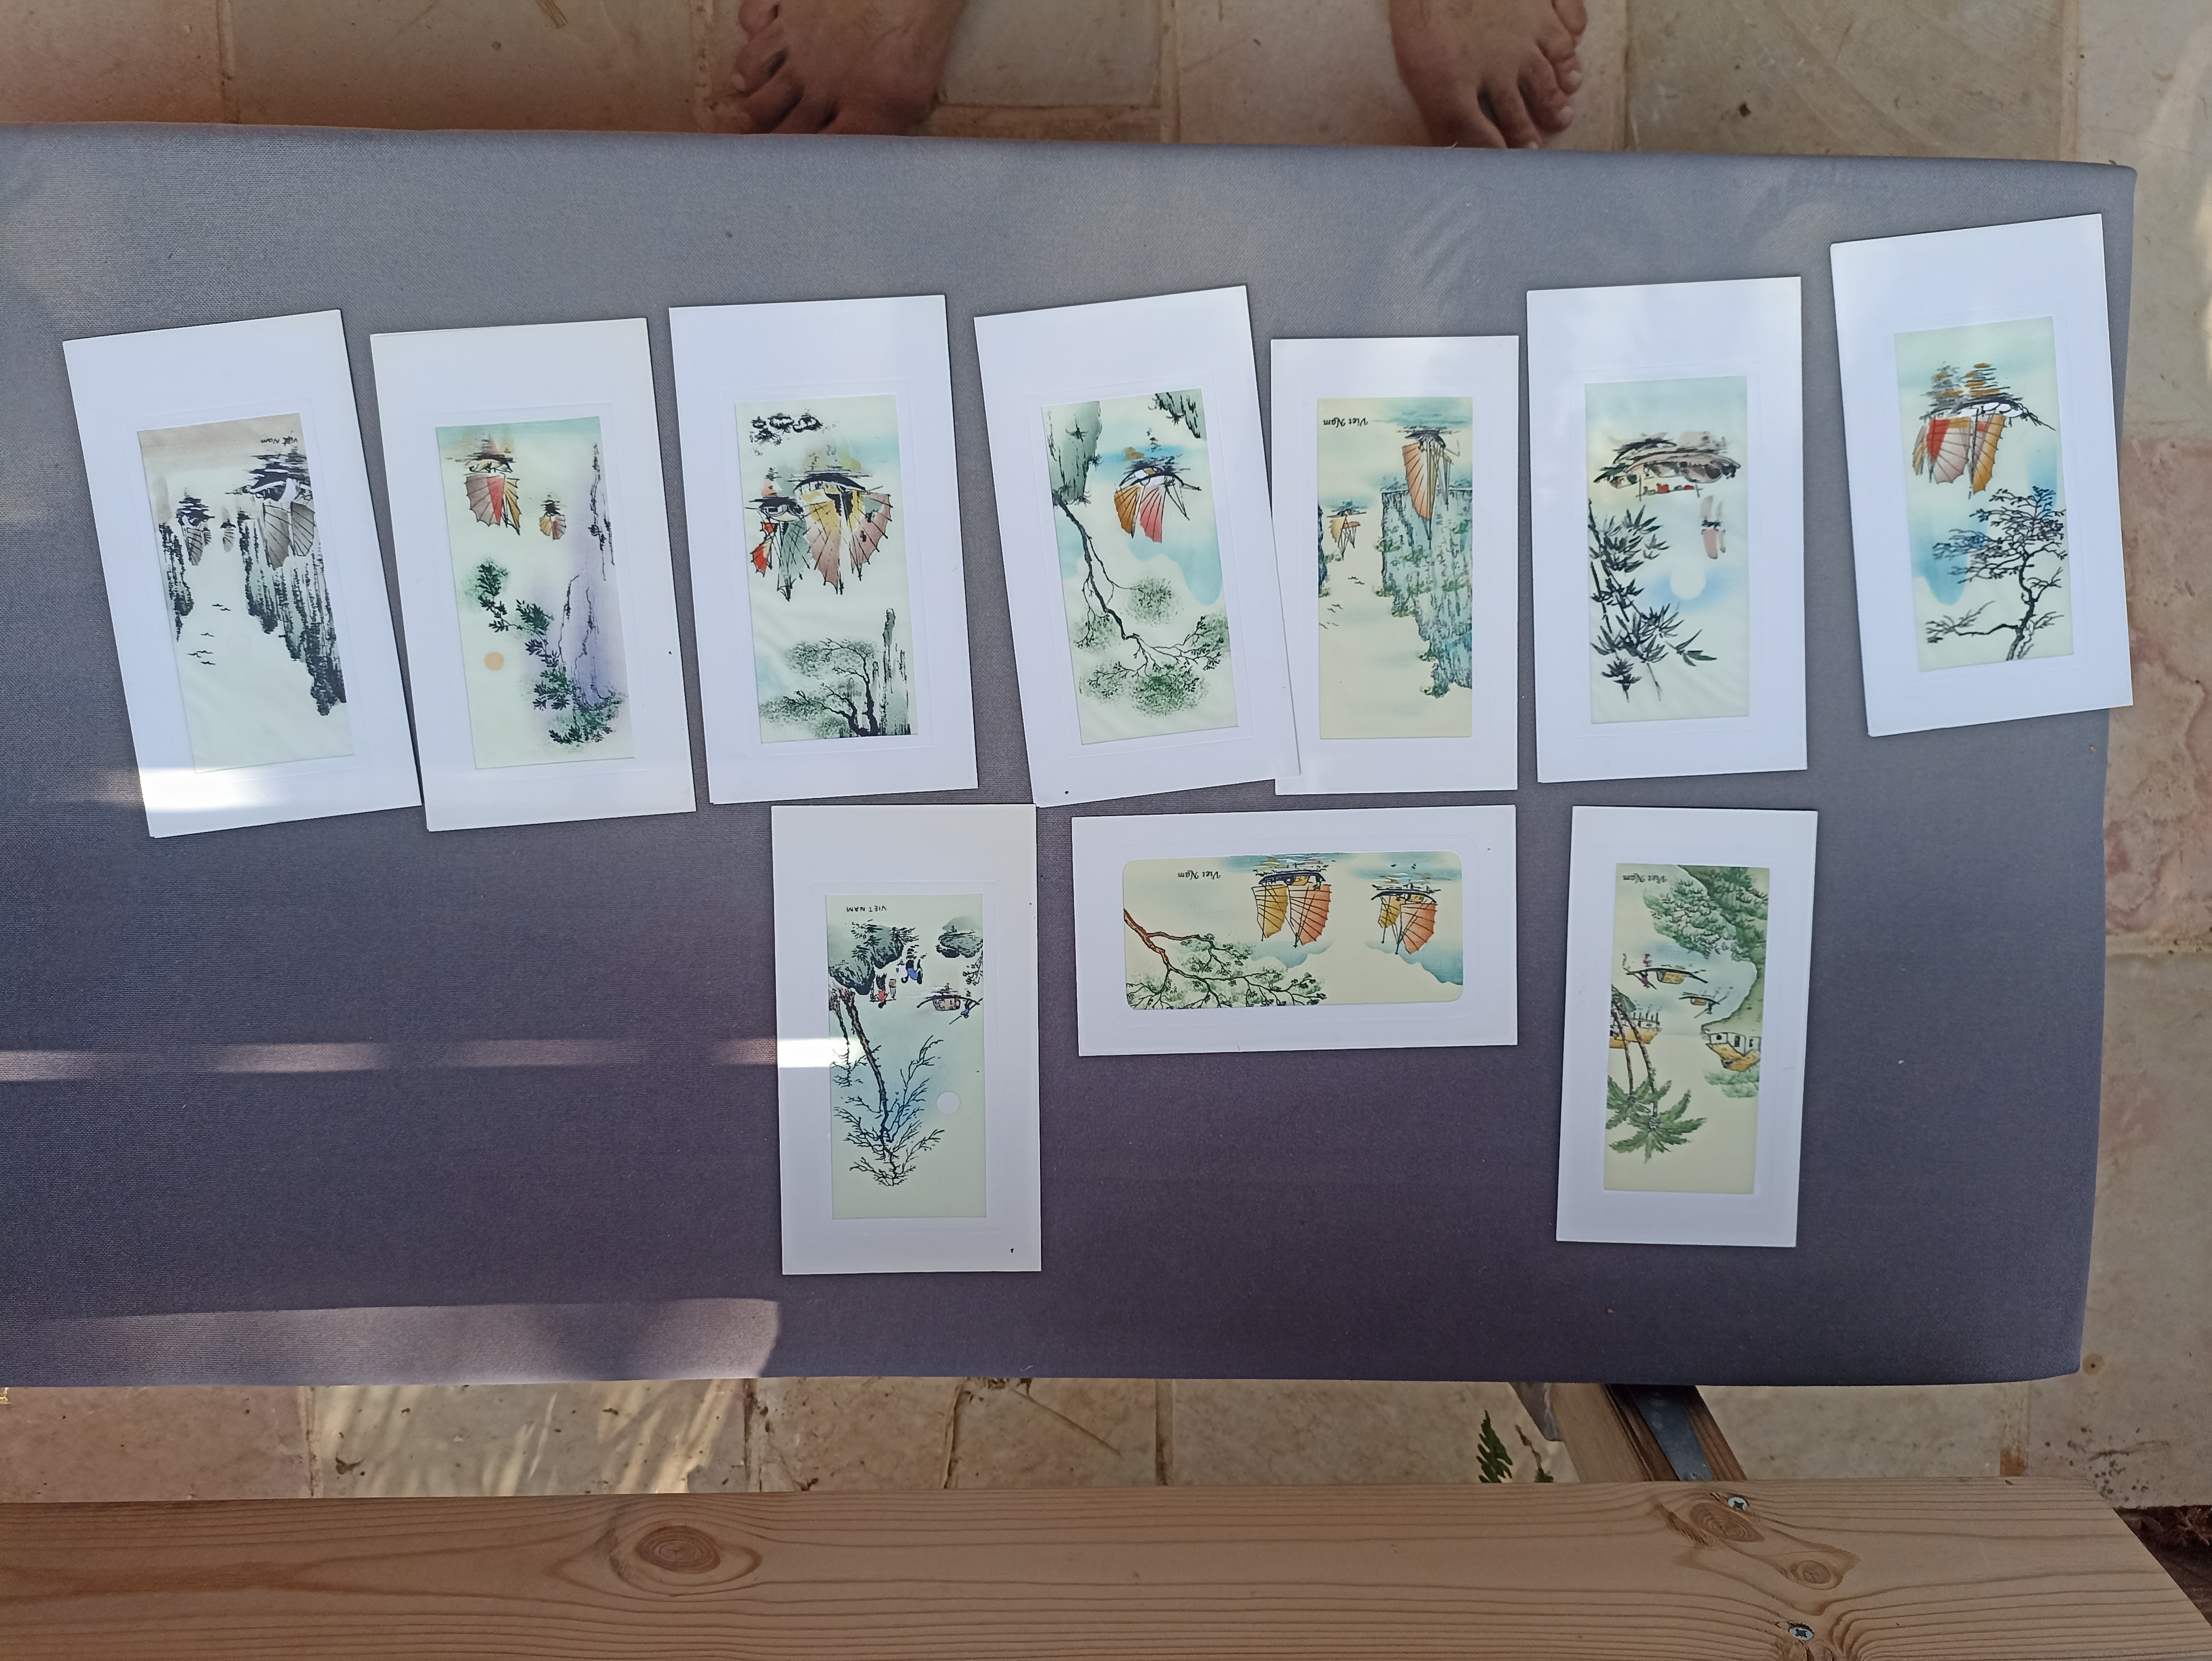 תמונה 1 ,תמונות מויטנאם מצוירות משי  למכירה בבית אריה אומנות  ציורים